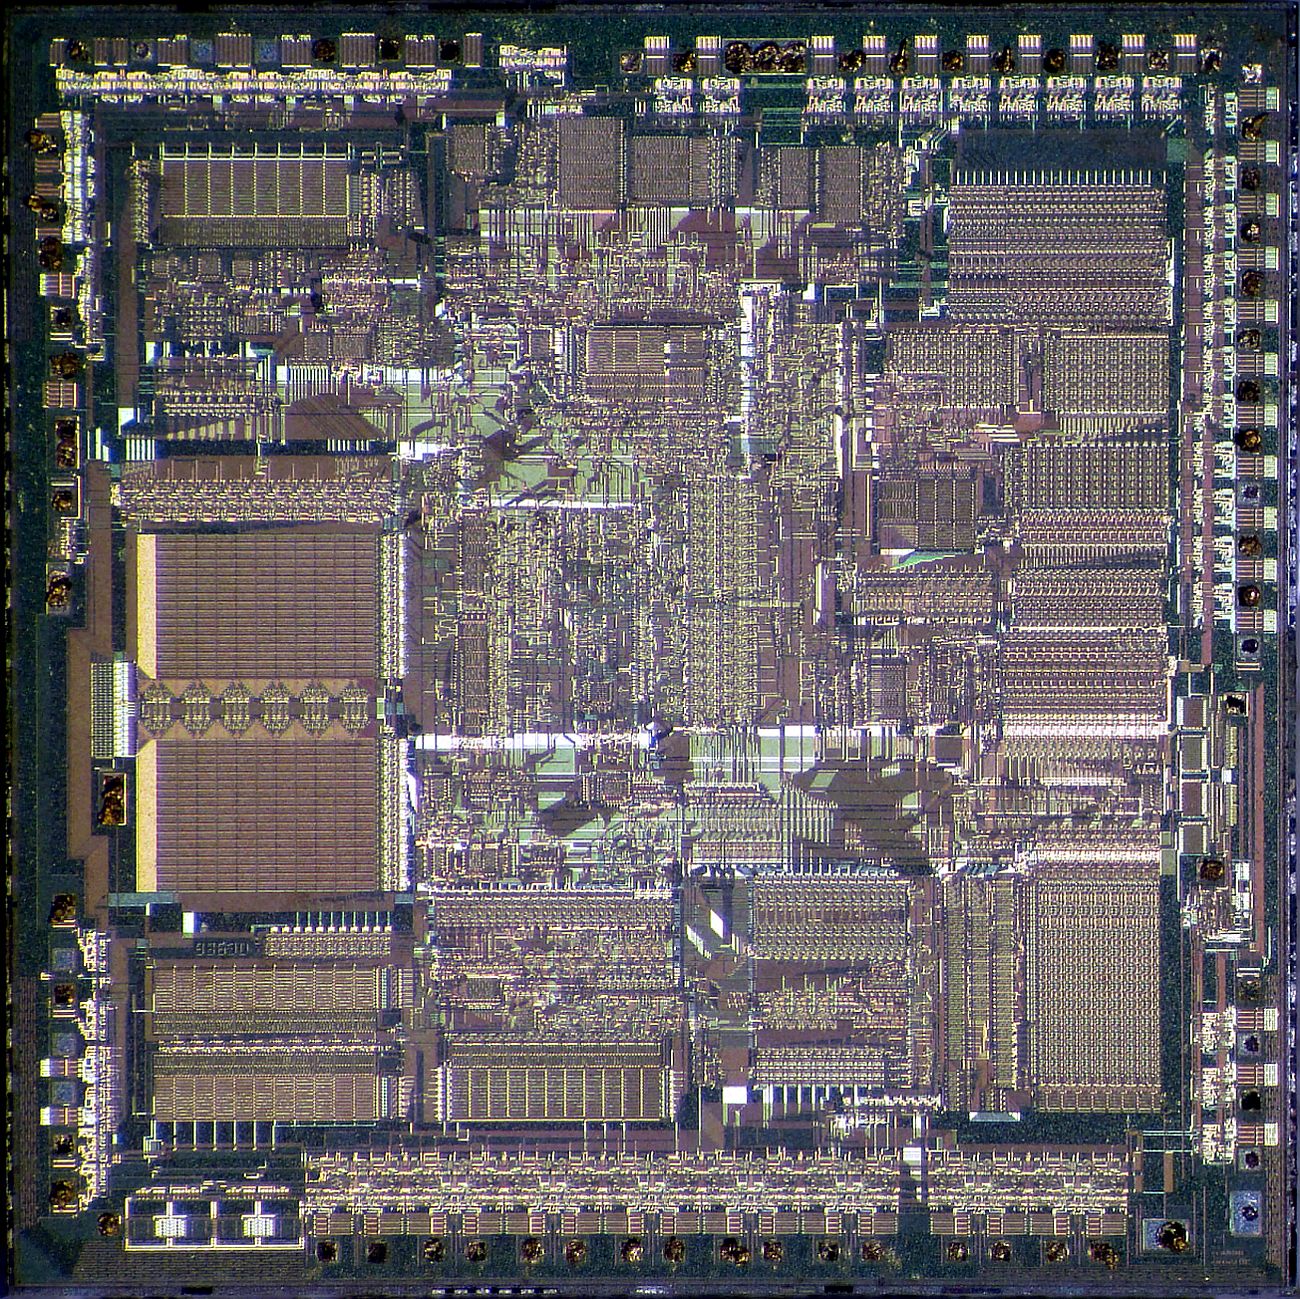 AMD Am286